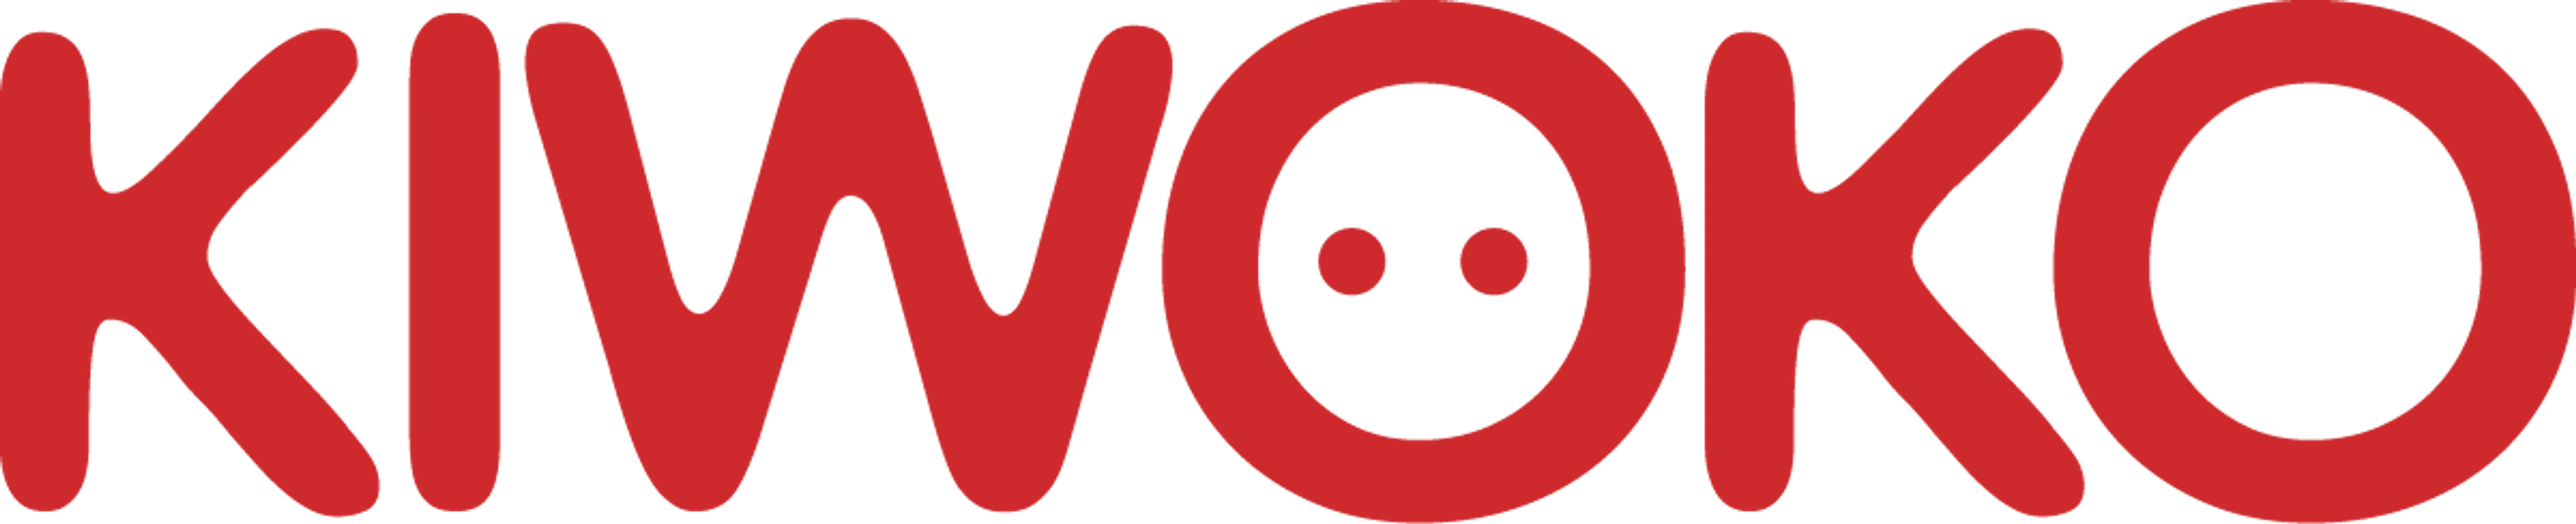 KIWOKO logo